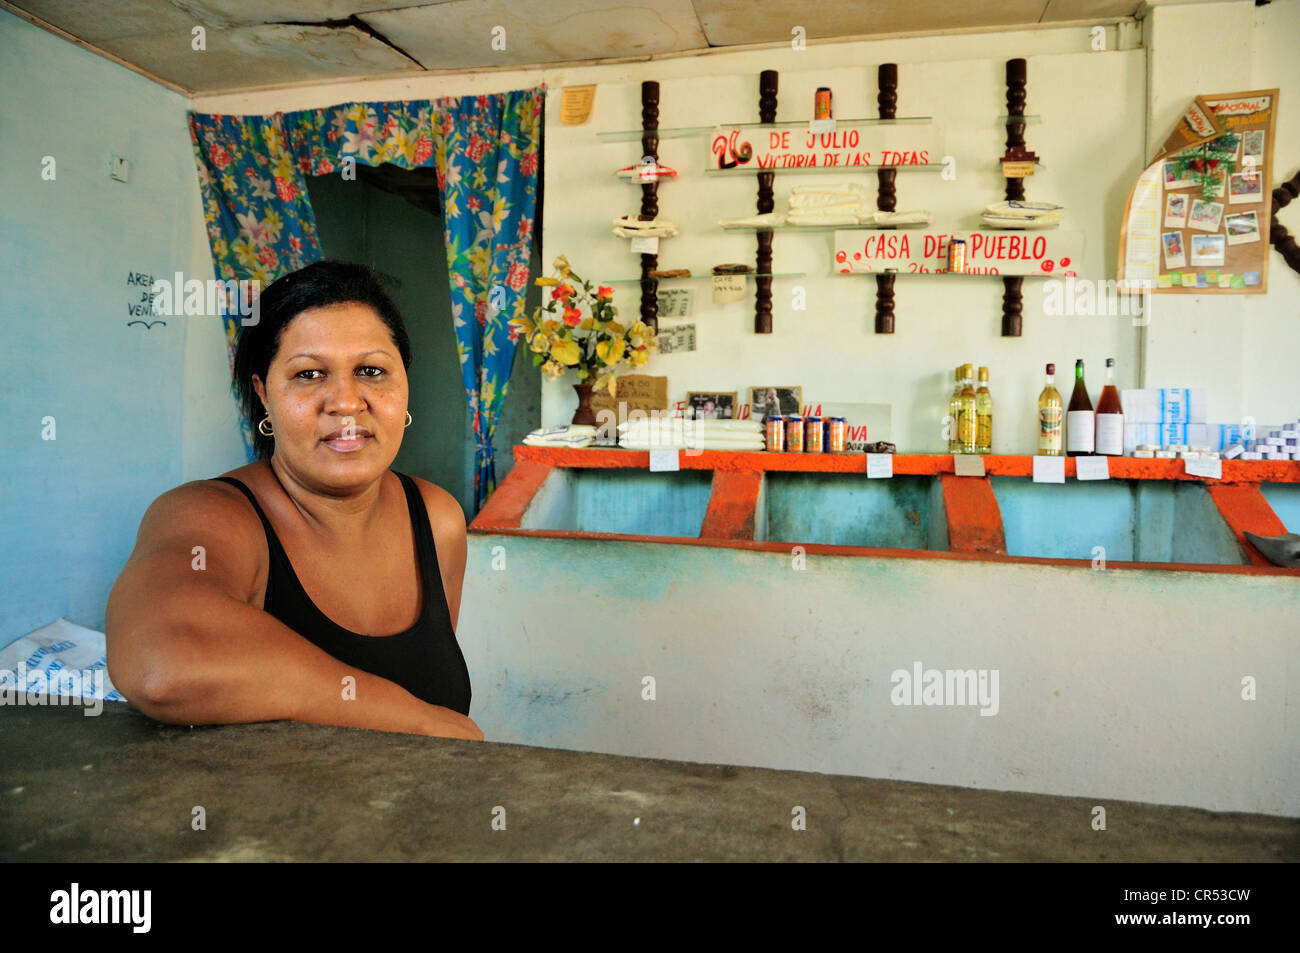 Vendeuse dans une cave, un magasin du gouvernement qui commerce alimentaires pour des coupons de rationnement, Baracoa, Cuba, Caraïbes Banque D'Images